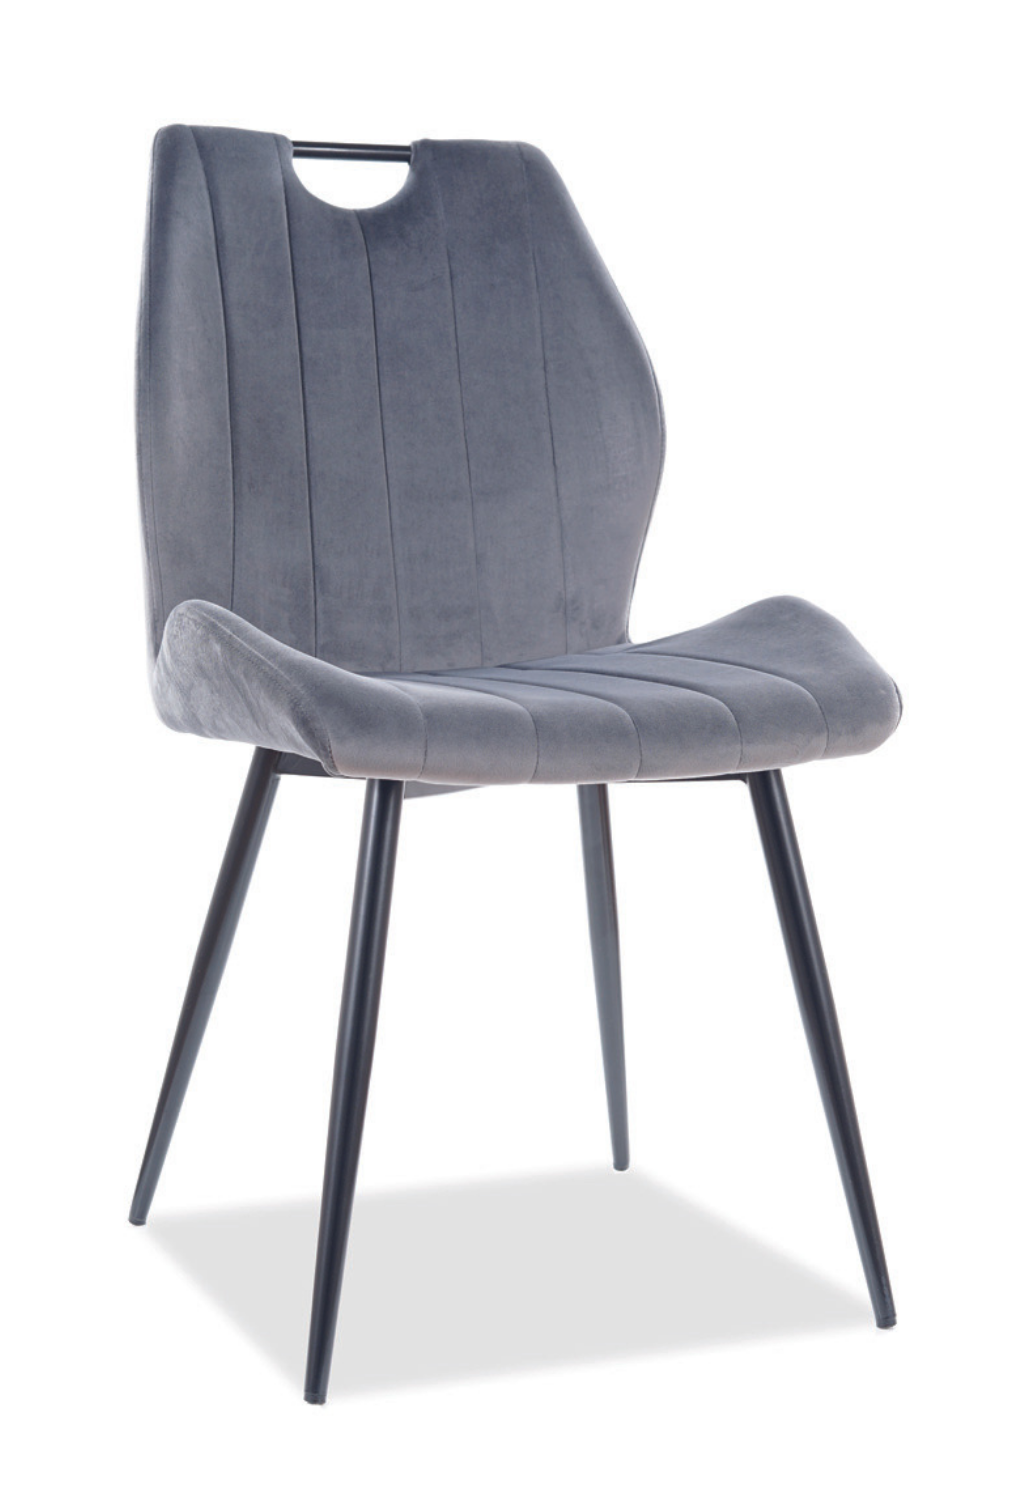 Charity szék (szürke) - Marco Mobili Bútoráruház - Szék